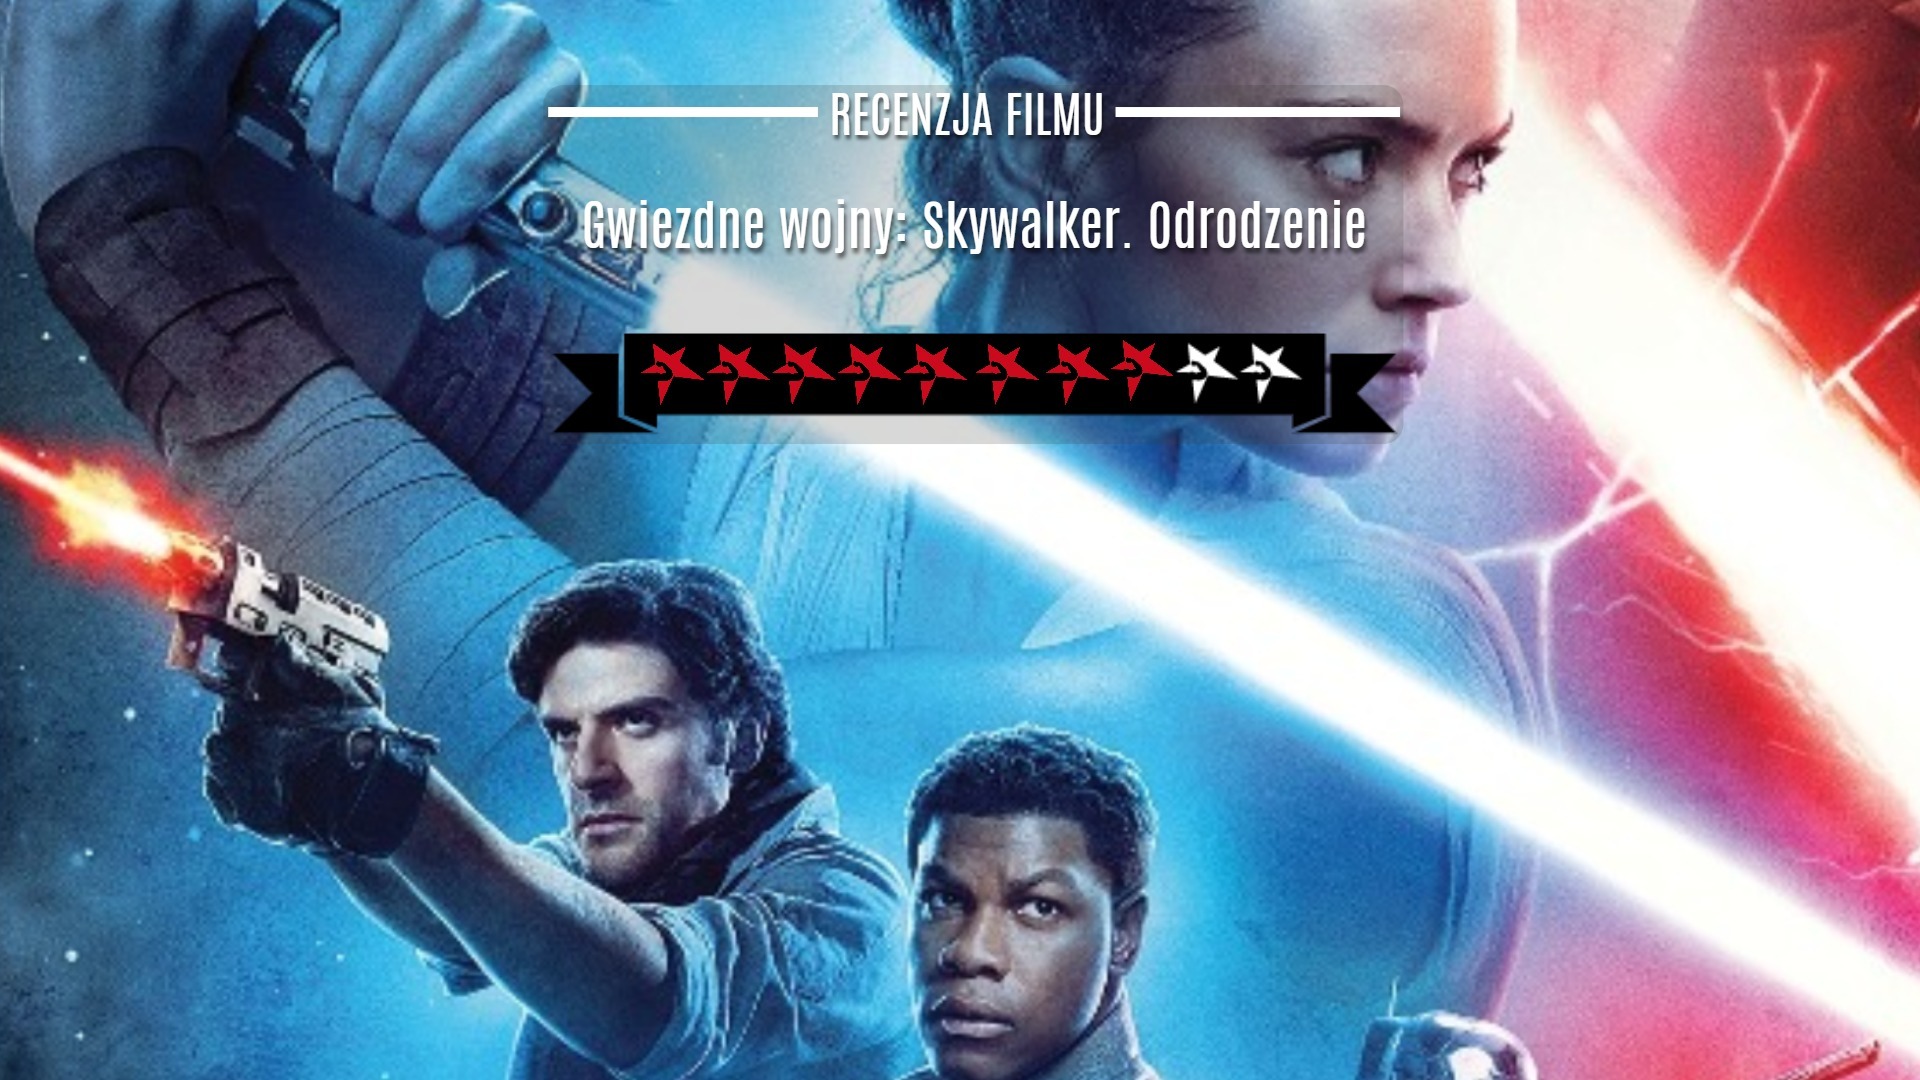 Gwiezdne wojny: Skywalker. Odrodzenie recenzja filmu kino film